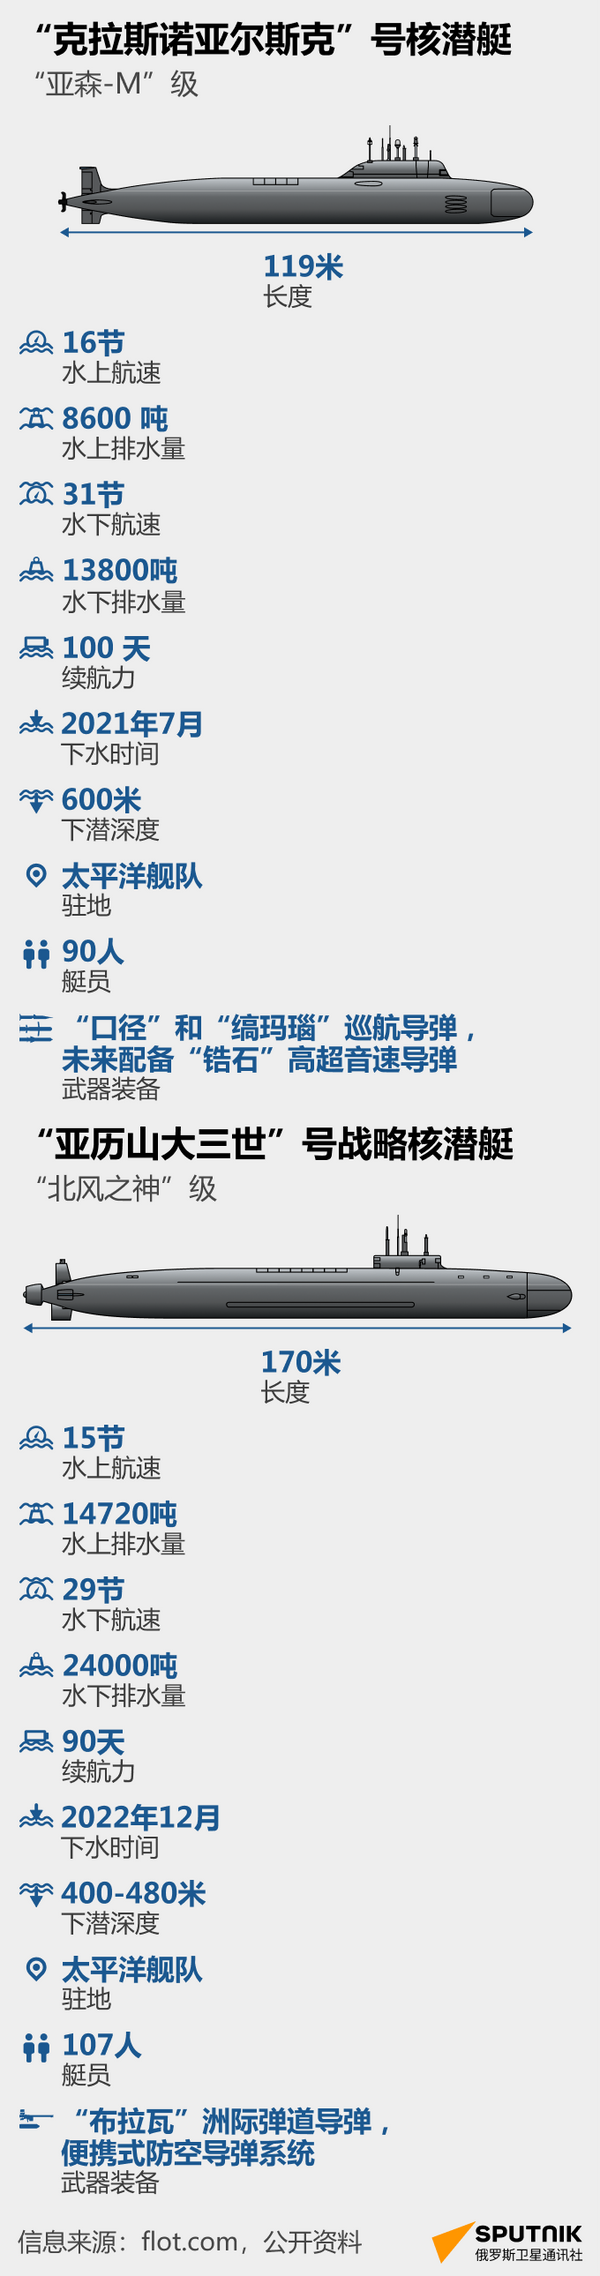 俄罗斯两艘核潜艇将加入太平洋舰队 - 俄罗斯卫星通讯社